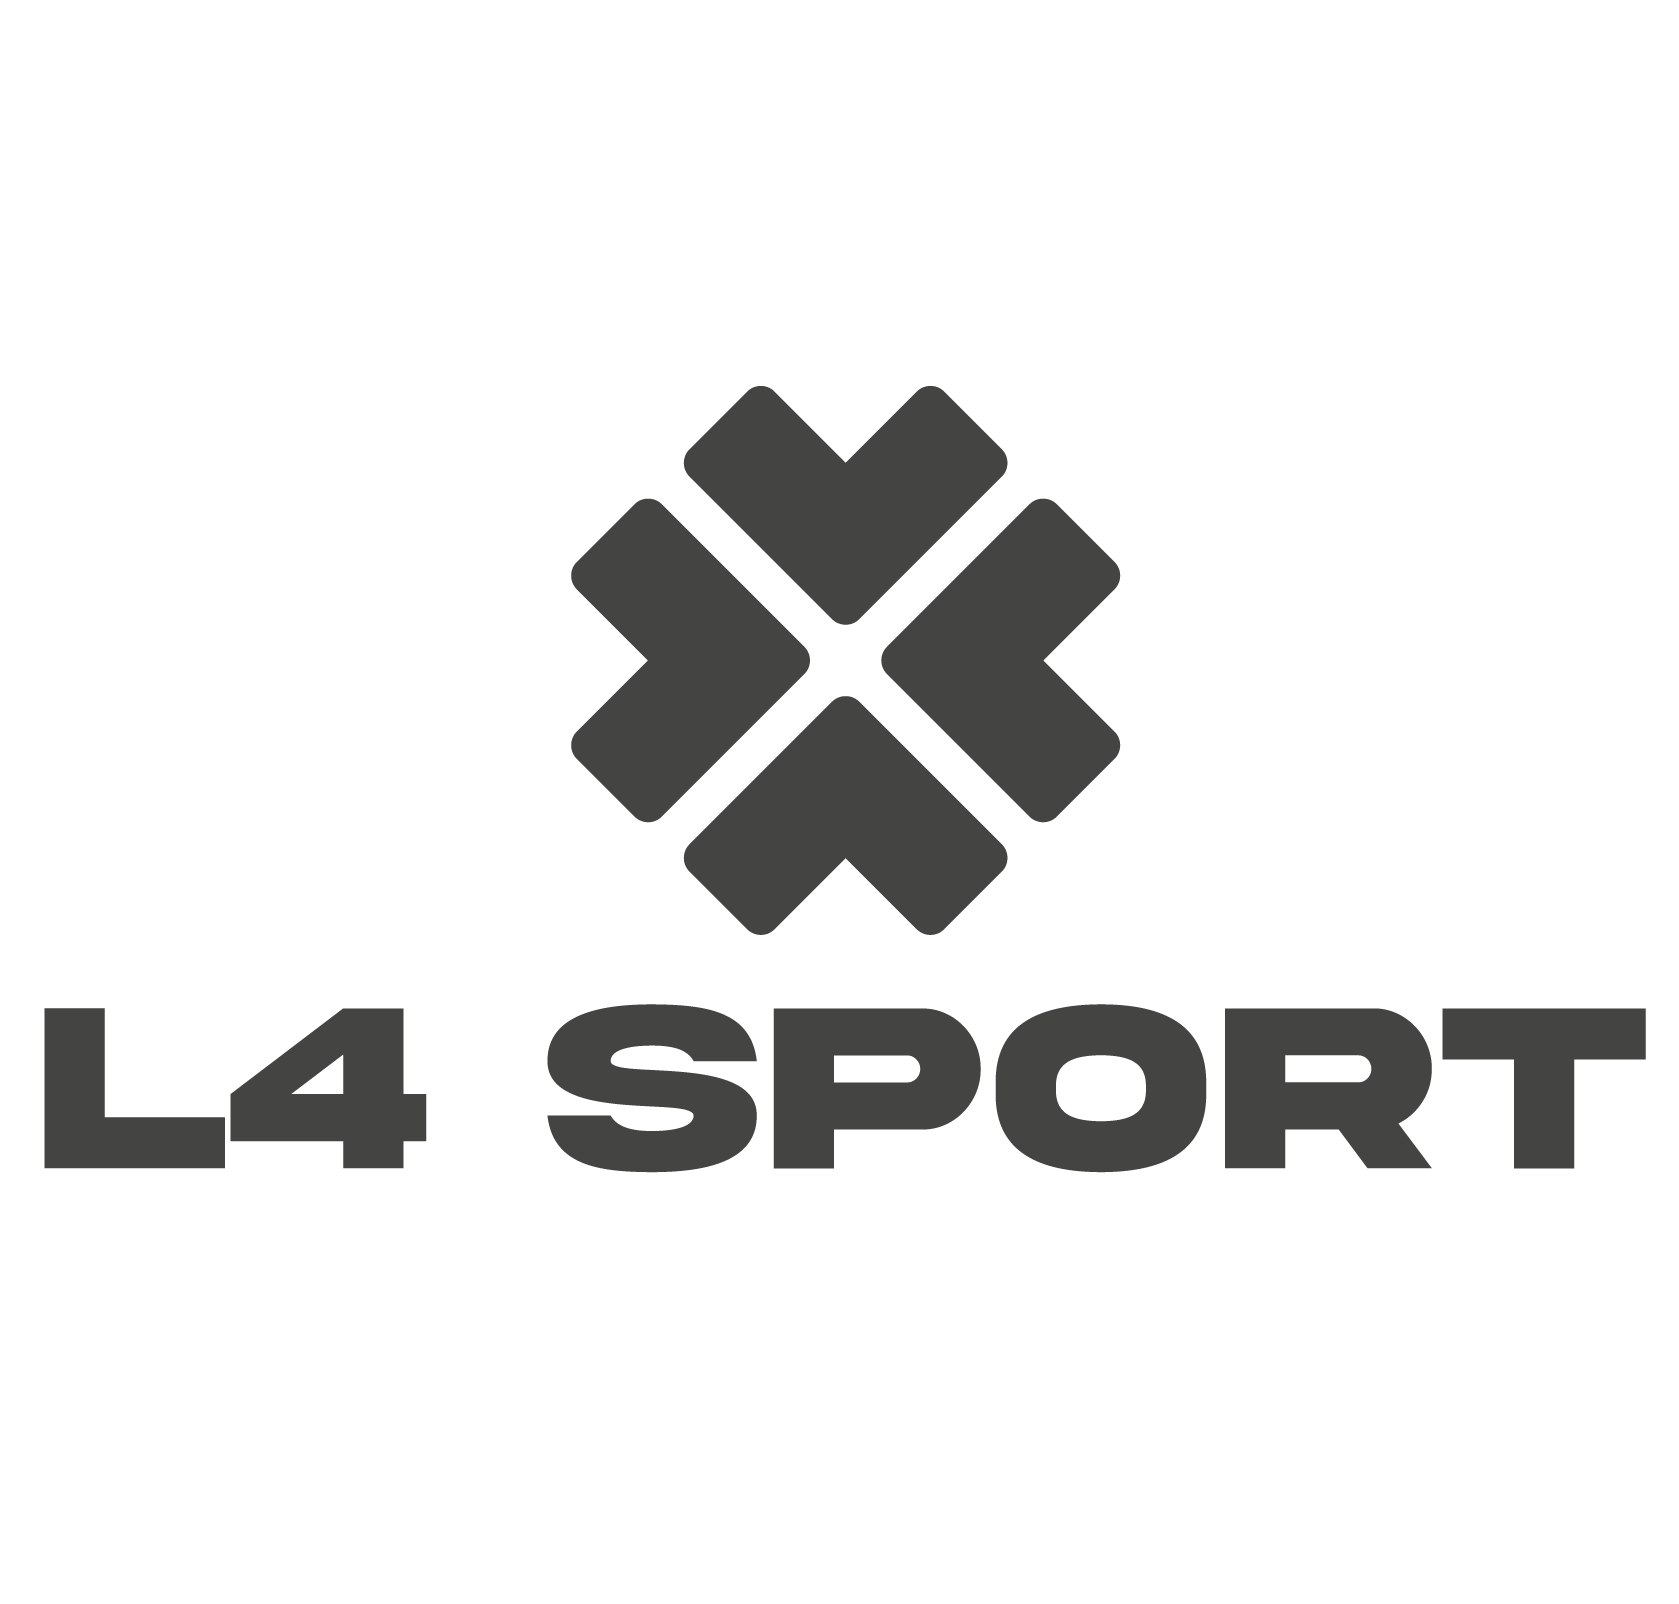 L4 Sport